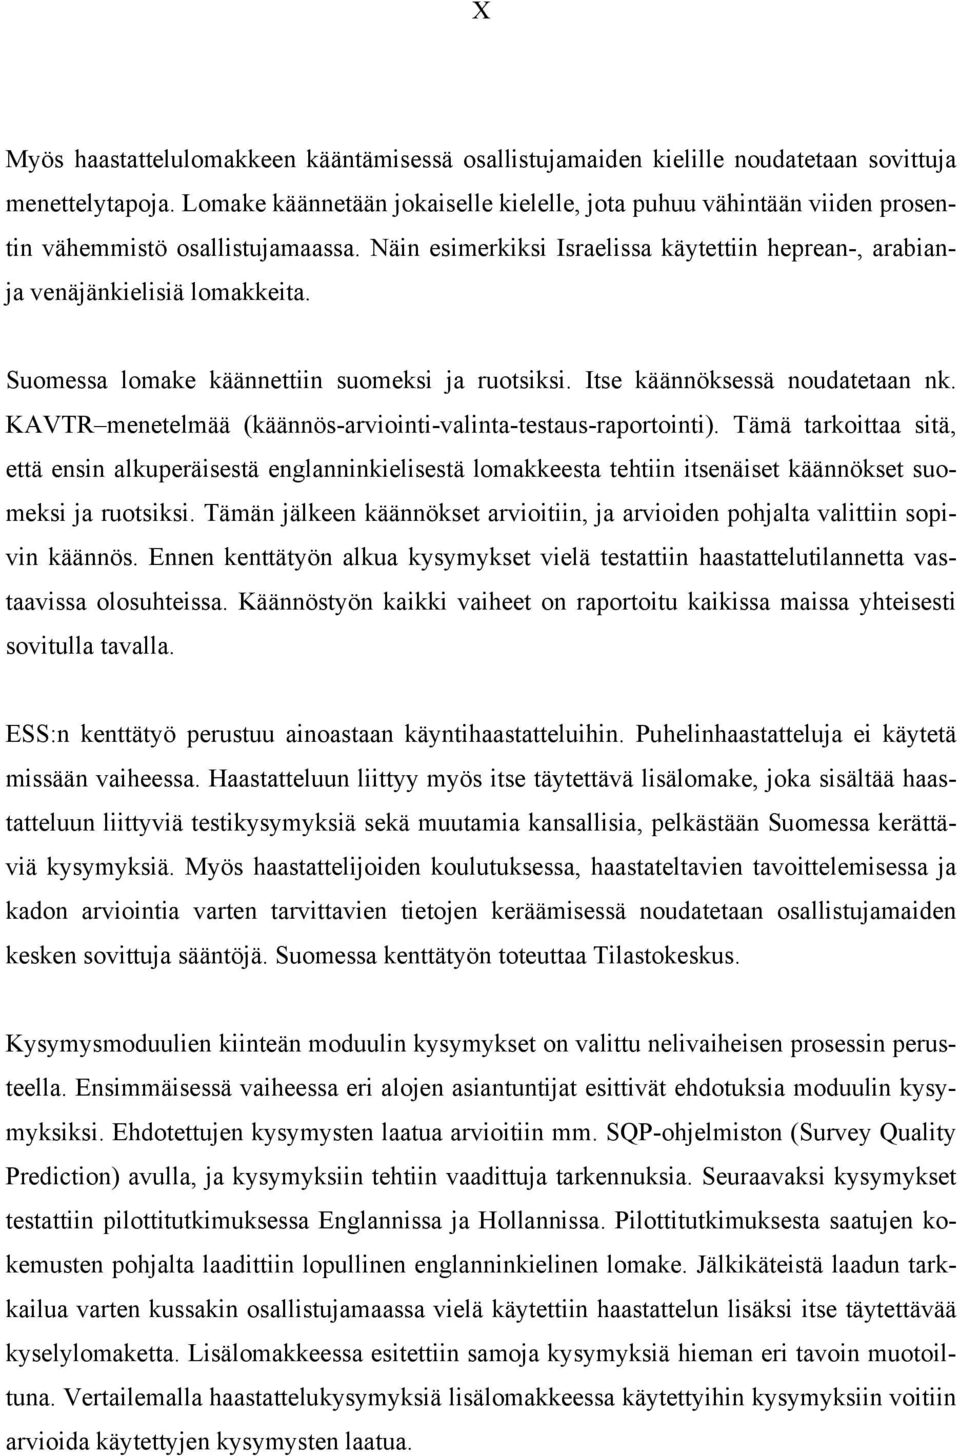 Suomessa lomake käännettiin suomeksi ja ruotsiksi. Itse käännöksessä noudatetaan nk. KAVTR menetelmää (käännös-arviointi-valinta-testaus-raportointi).